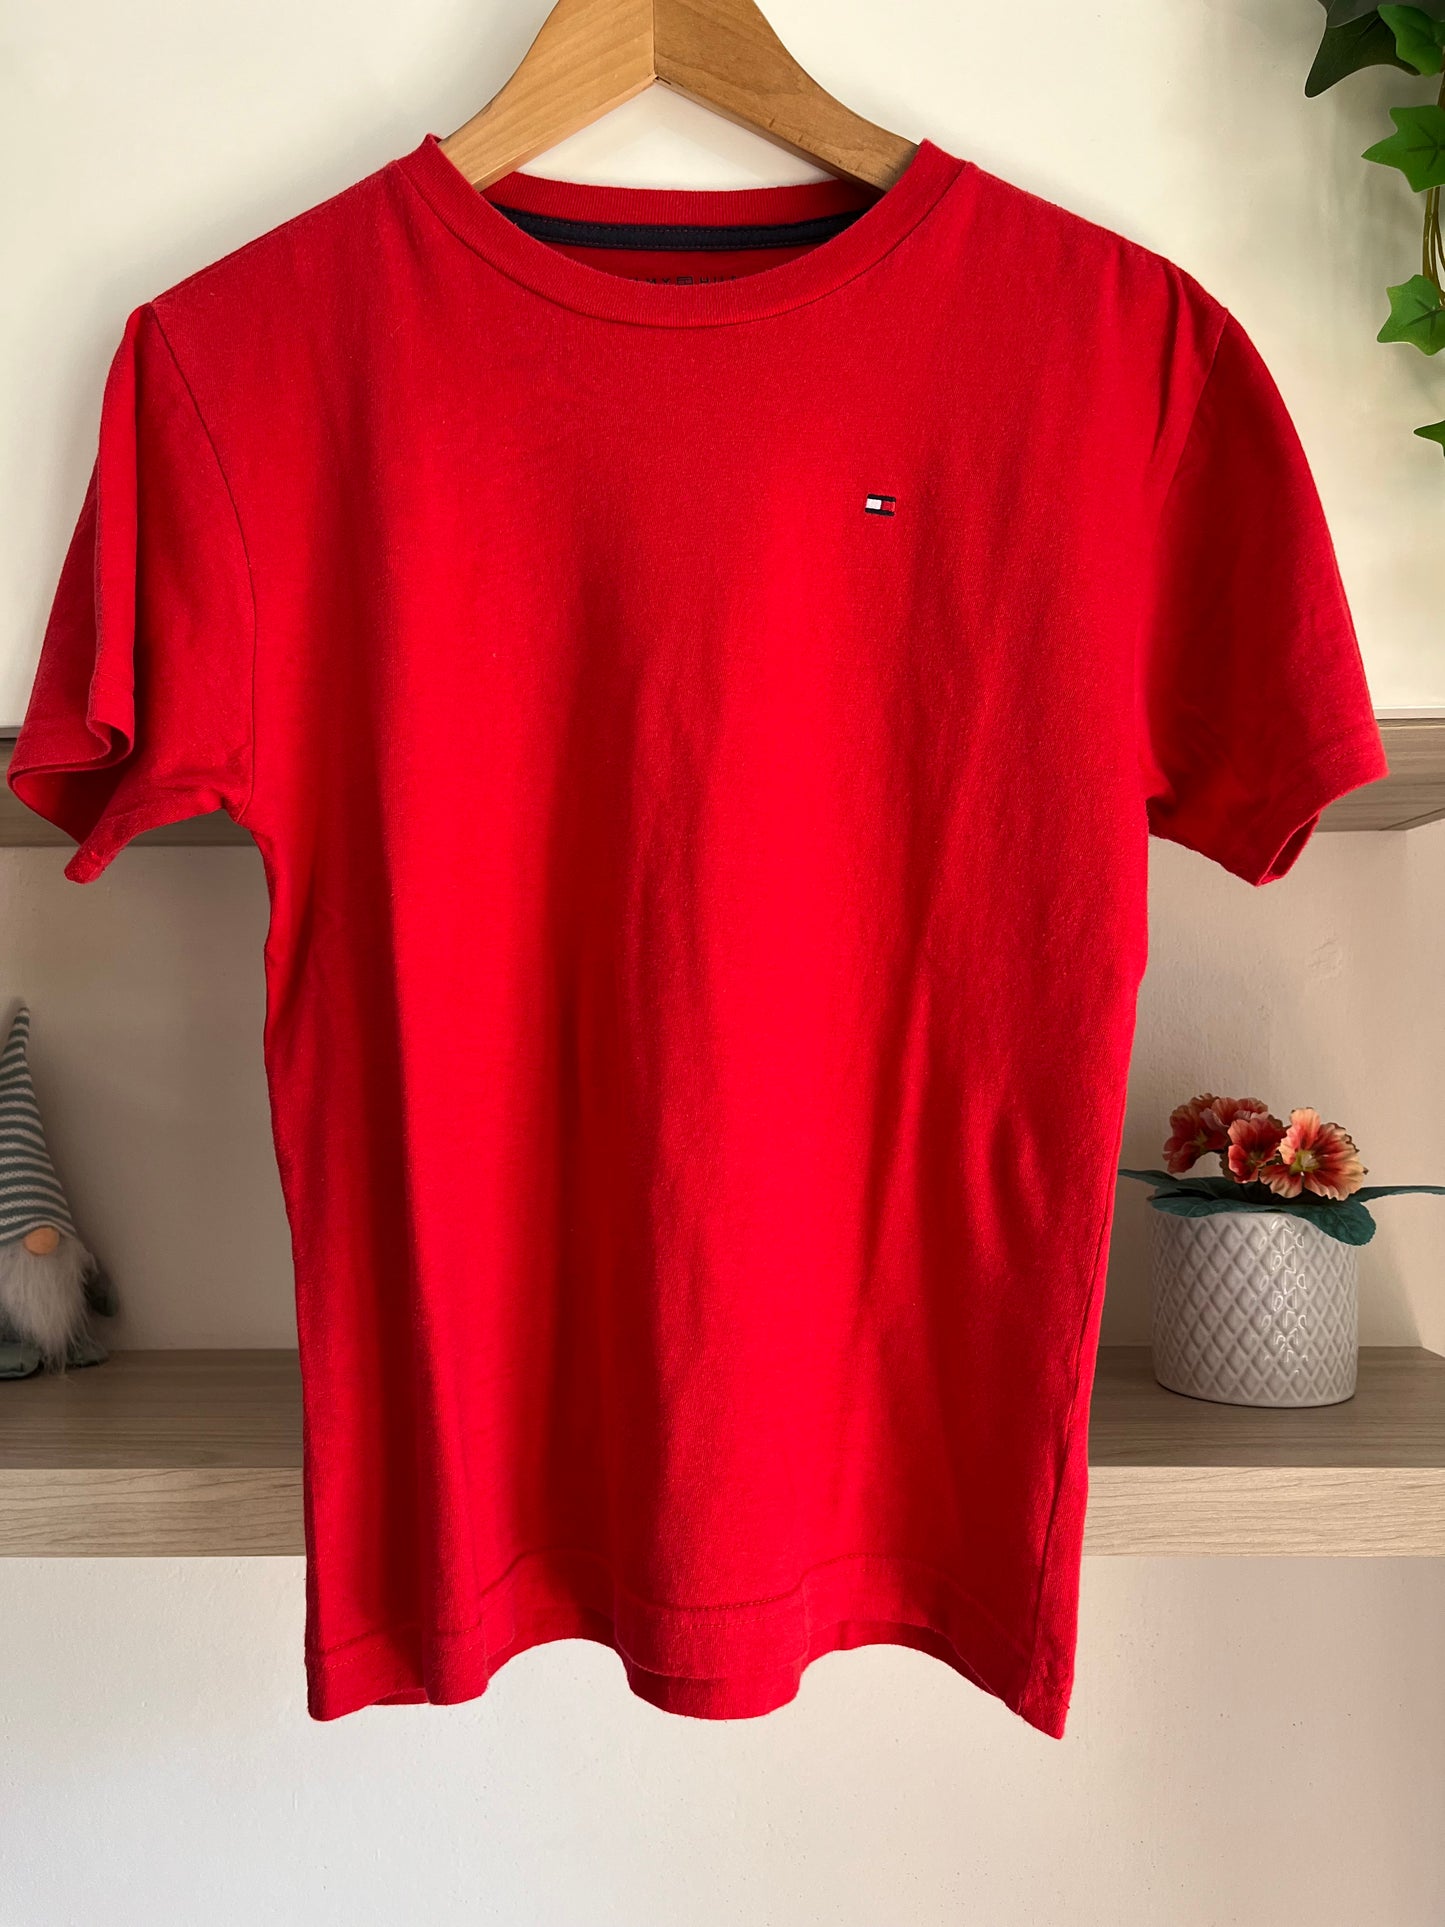 T-Shirt Tommy Hilfiger rossa taglia M